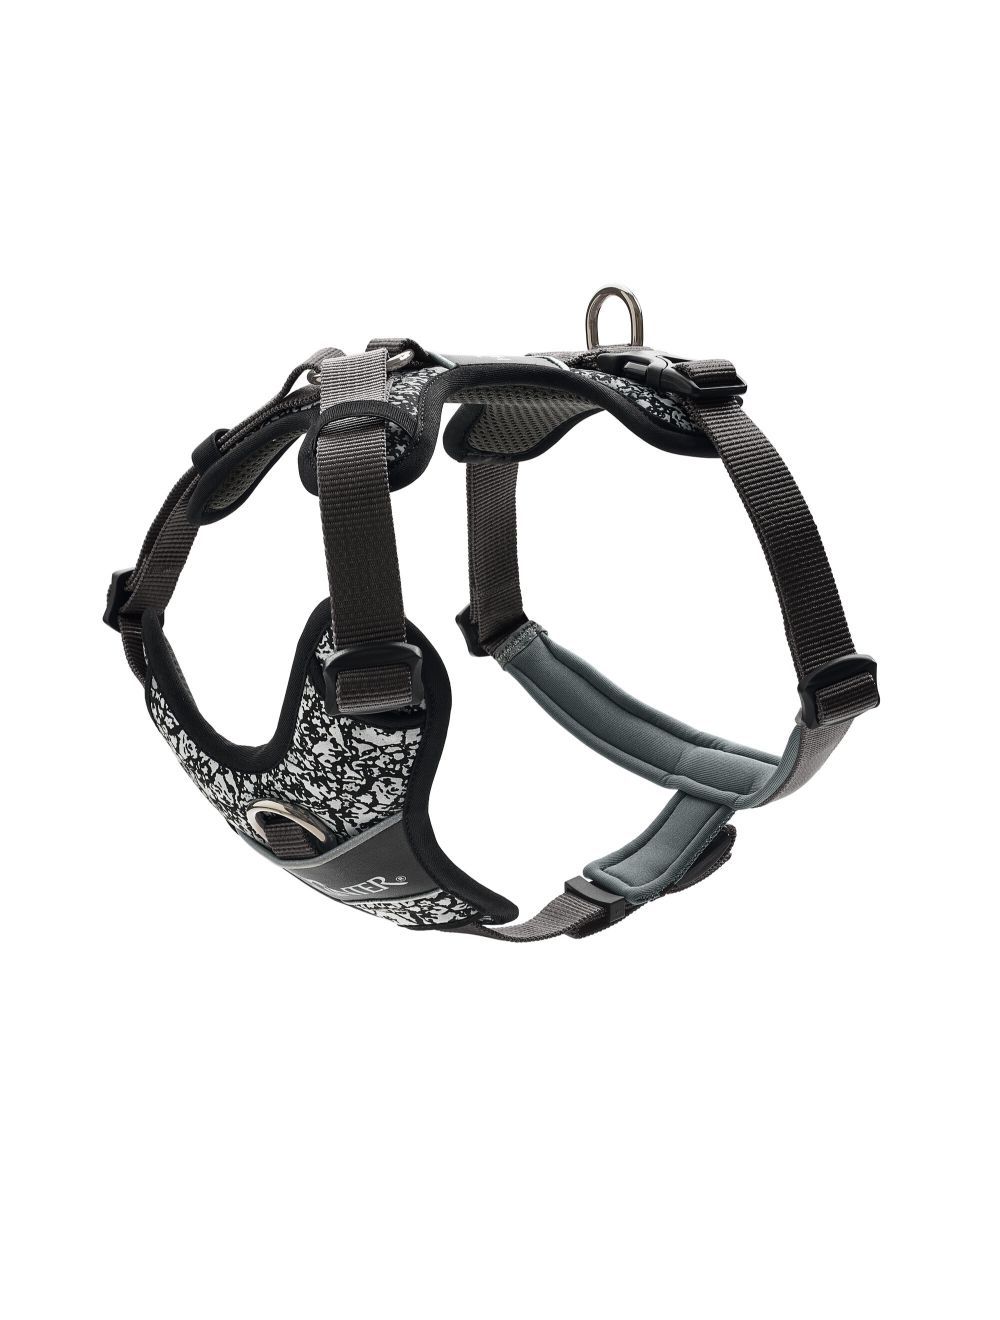 Hunter - Harness Divo Reflect M, black/grey - (68961) - Kjæledyr og utstyr